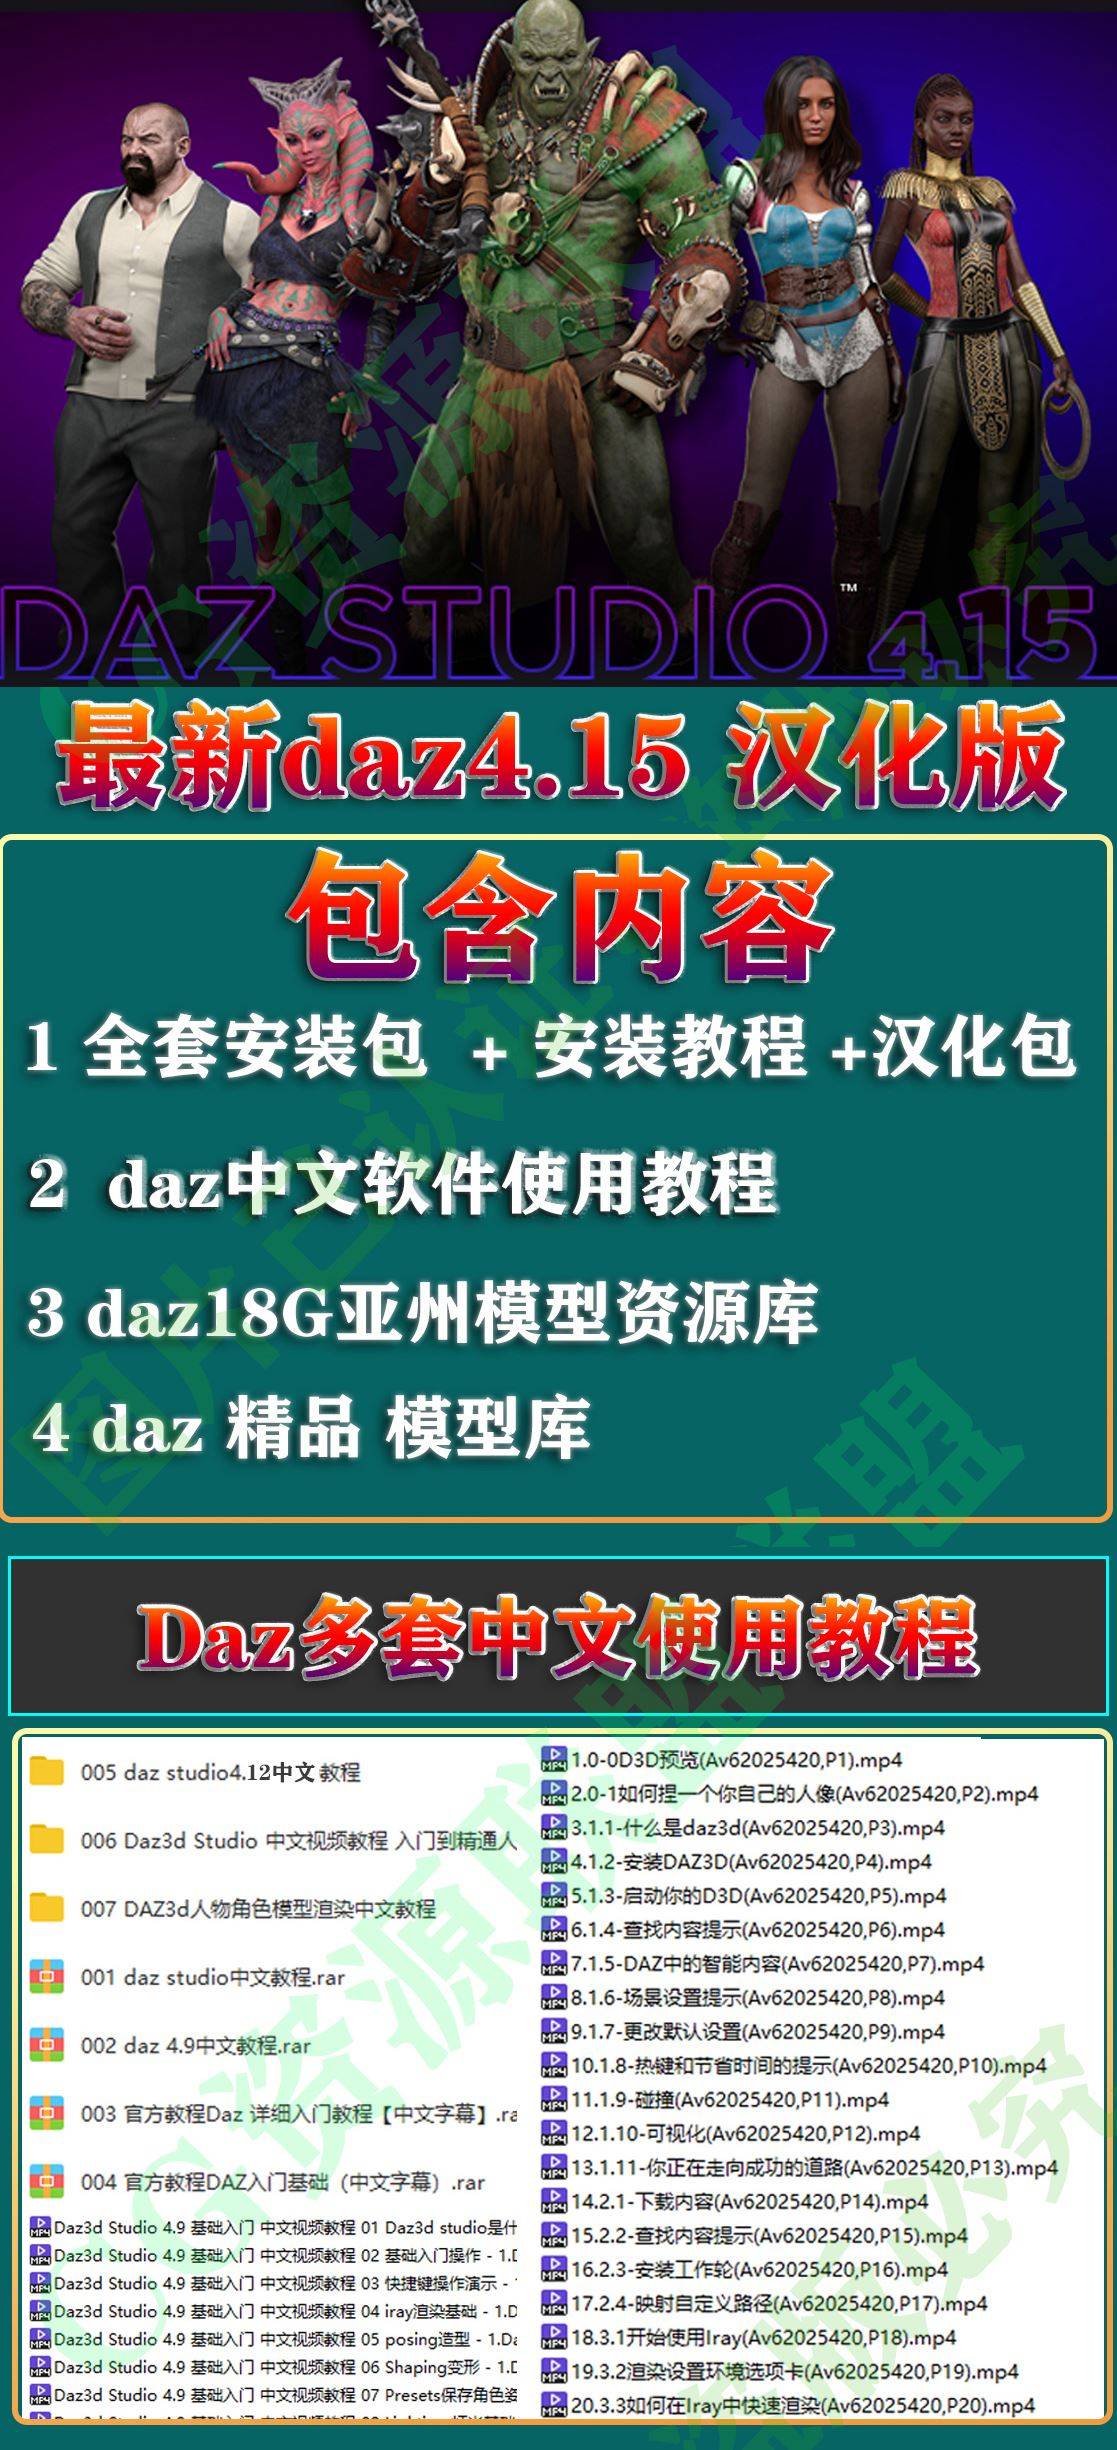 【5套齐全】Daz3D Studio 4.20中文版软件模型资源库教程合集